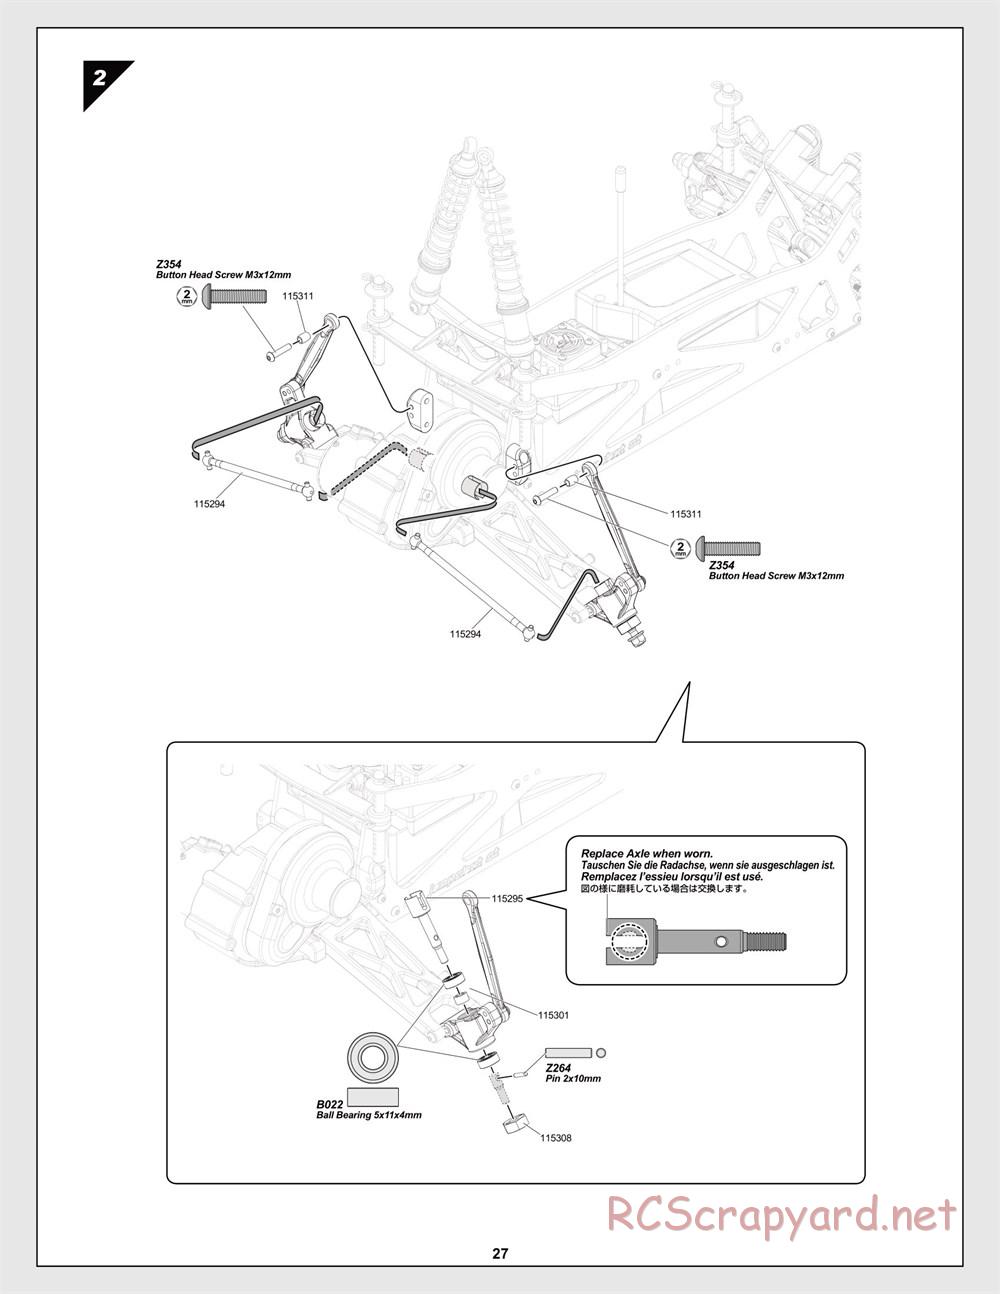 HPI - Jumpshot MT Flux - Manual - Page 27